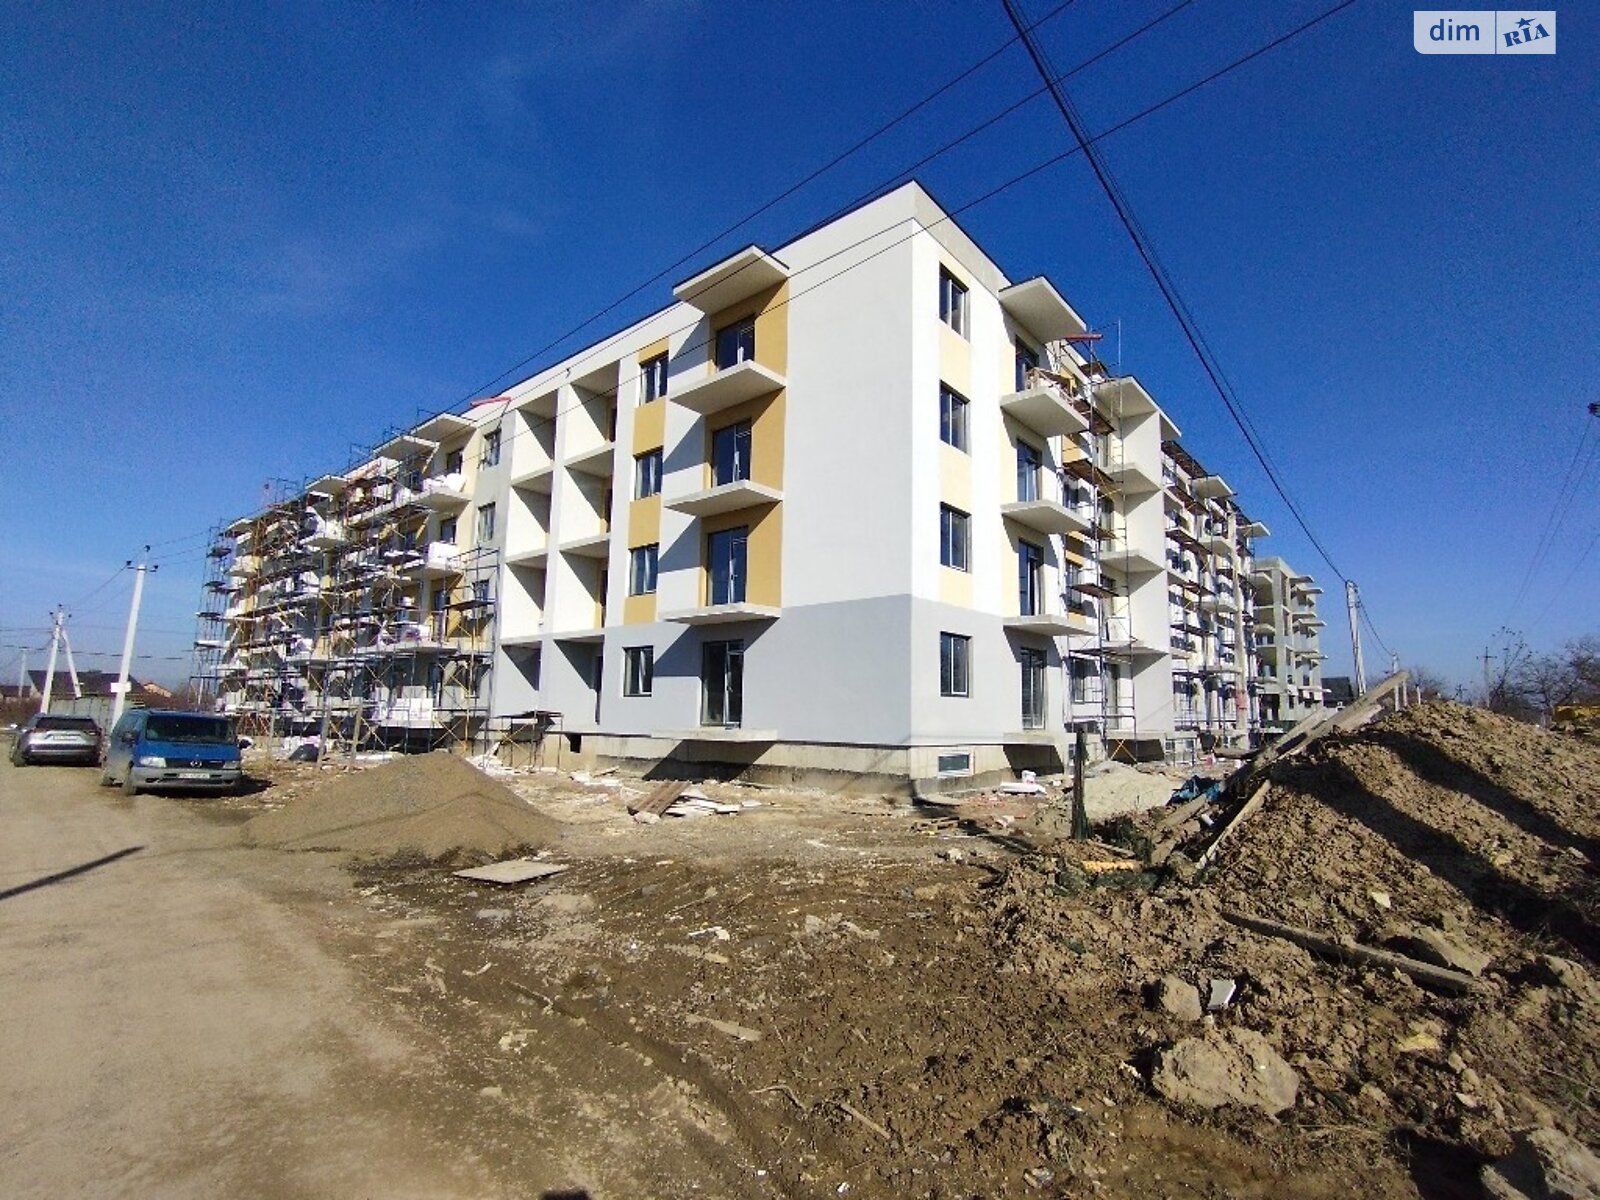 Продажа двухкомнатной квартиры в Ужгороде, на ул. Загорская 188, район БАМ фото 1